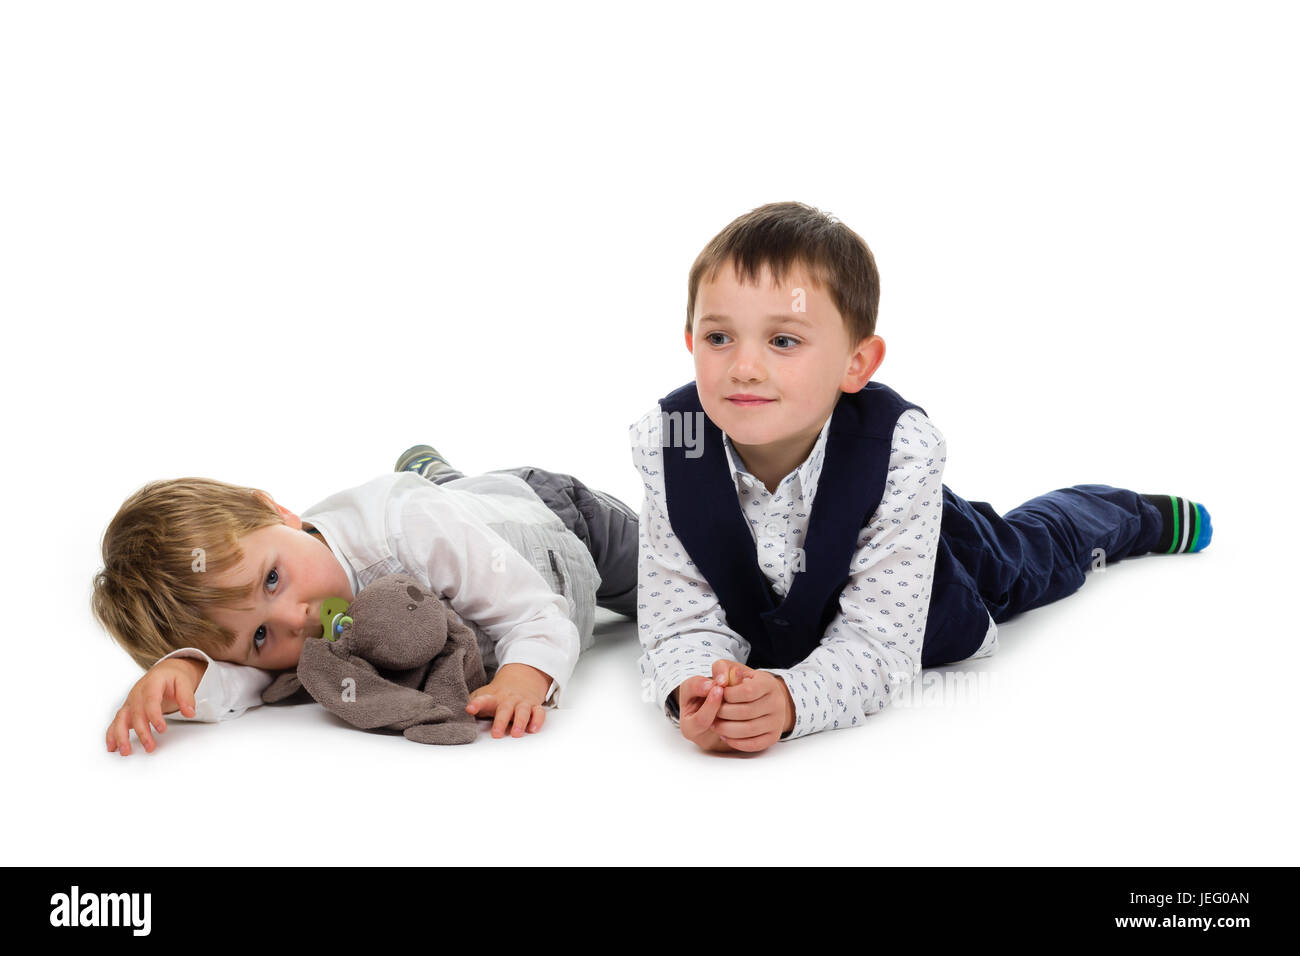 2 Petits frères portant des vêtements de fête, allongé sur le sol, avec des animaux en peluche (lapin) et sucette. Isolé sur fond blanc Banque D'Images